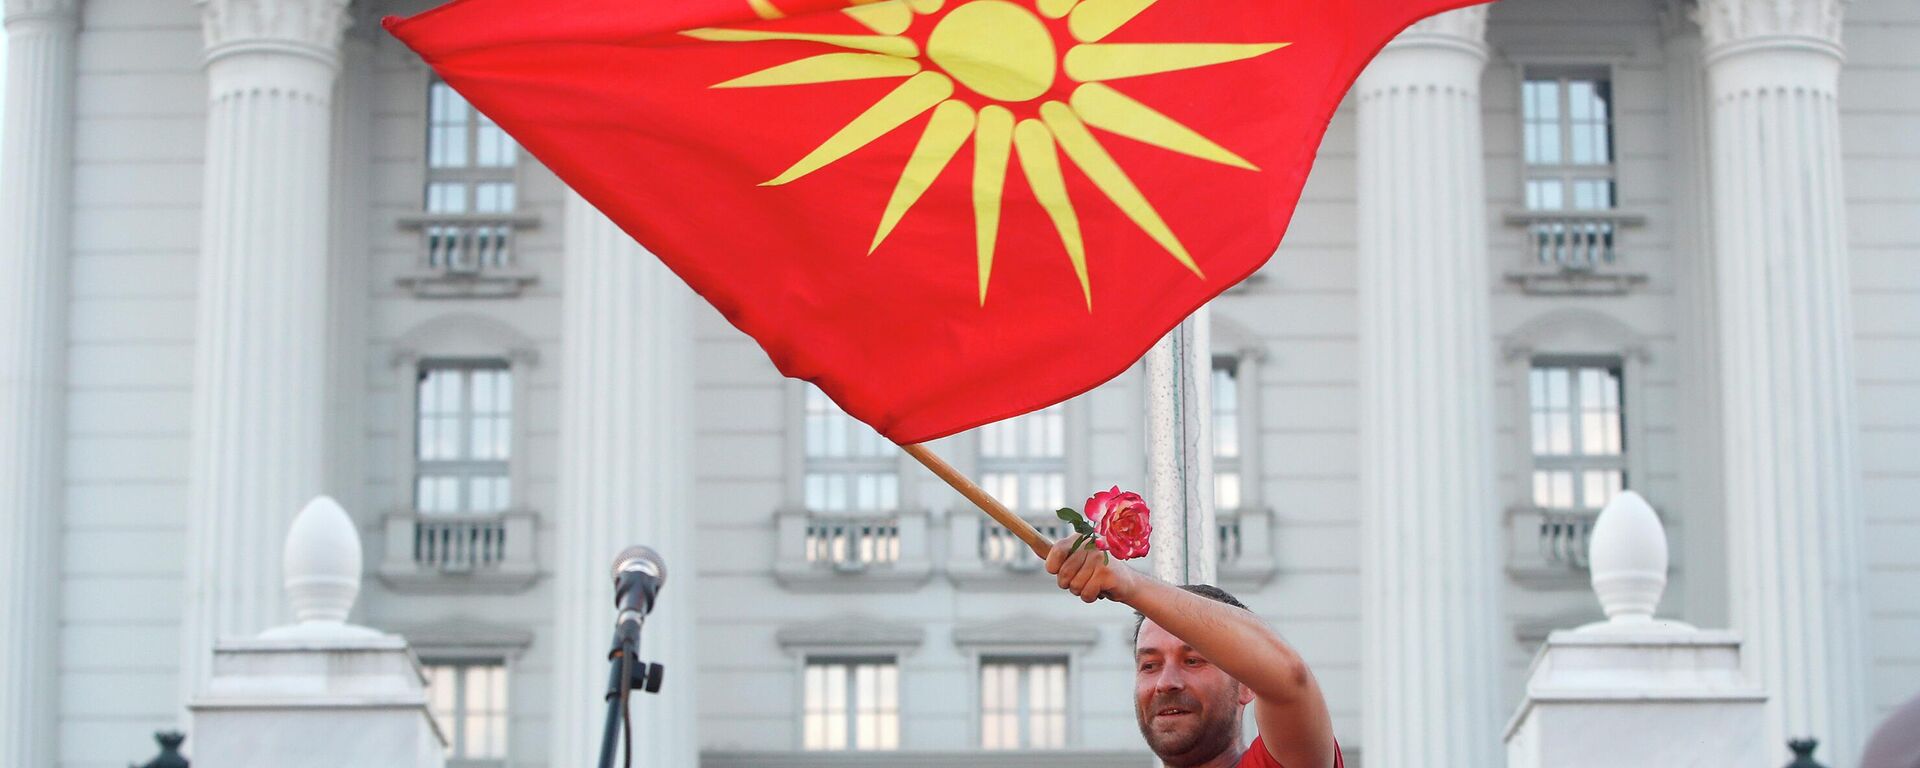 Demonstrant sa starom nacionalnom zastavom na antivladinom protestu u Skoplju - Sputnik Srbija, 1920, 06.07.2022